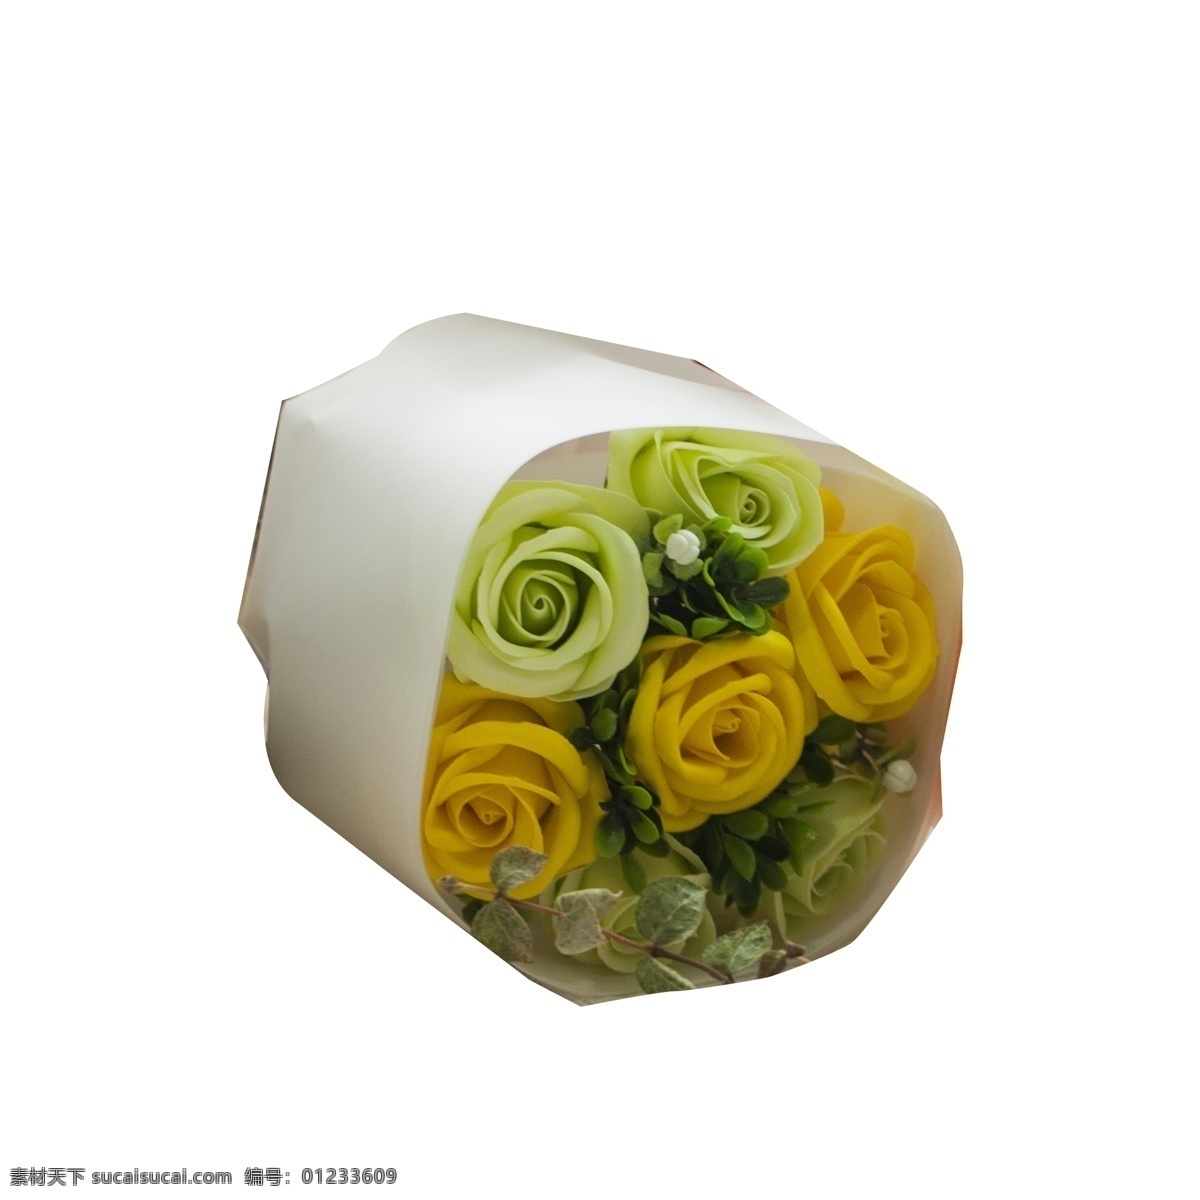 绿色植物 花朵 免 抠 图 新鲜礼盒 新鲜花朵 时尚礼盒 漂亮的花朵 情人节 礼物 时尚花艺 红色的花朵 免抠图